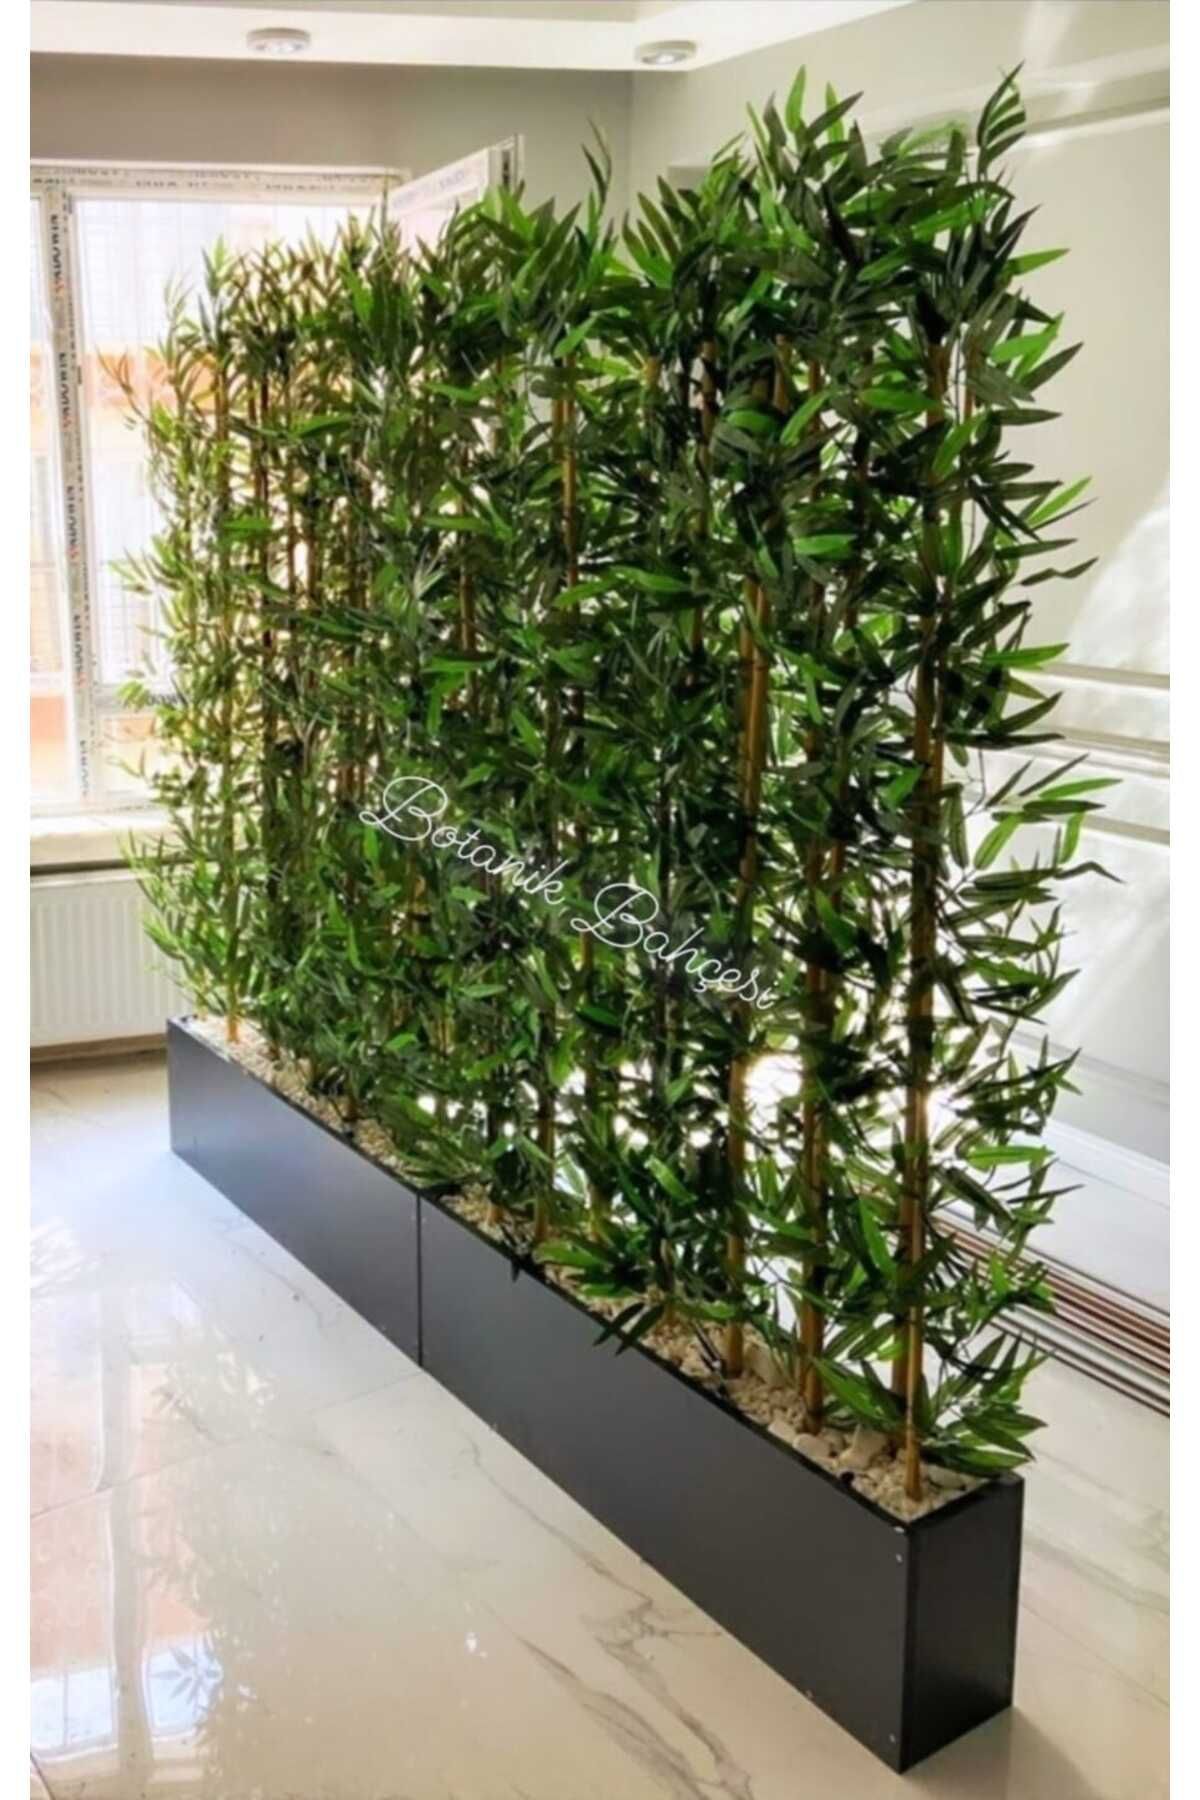 BotanikBahçem Yapay Bambu Ağacı 2 Metre Boyundadır .2 Adet Set Halinde Ahşap Antrasit Gri Saksıda Bamboo